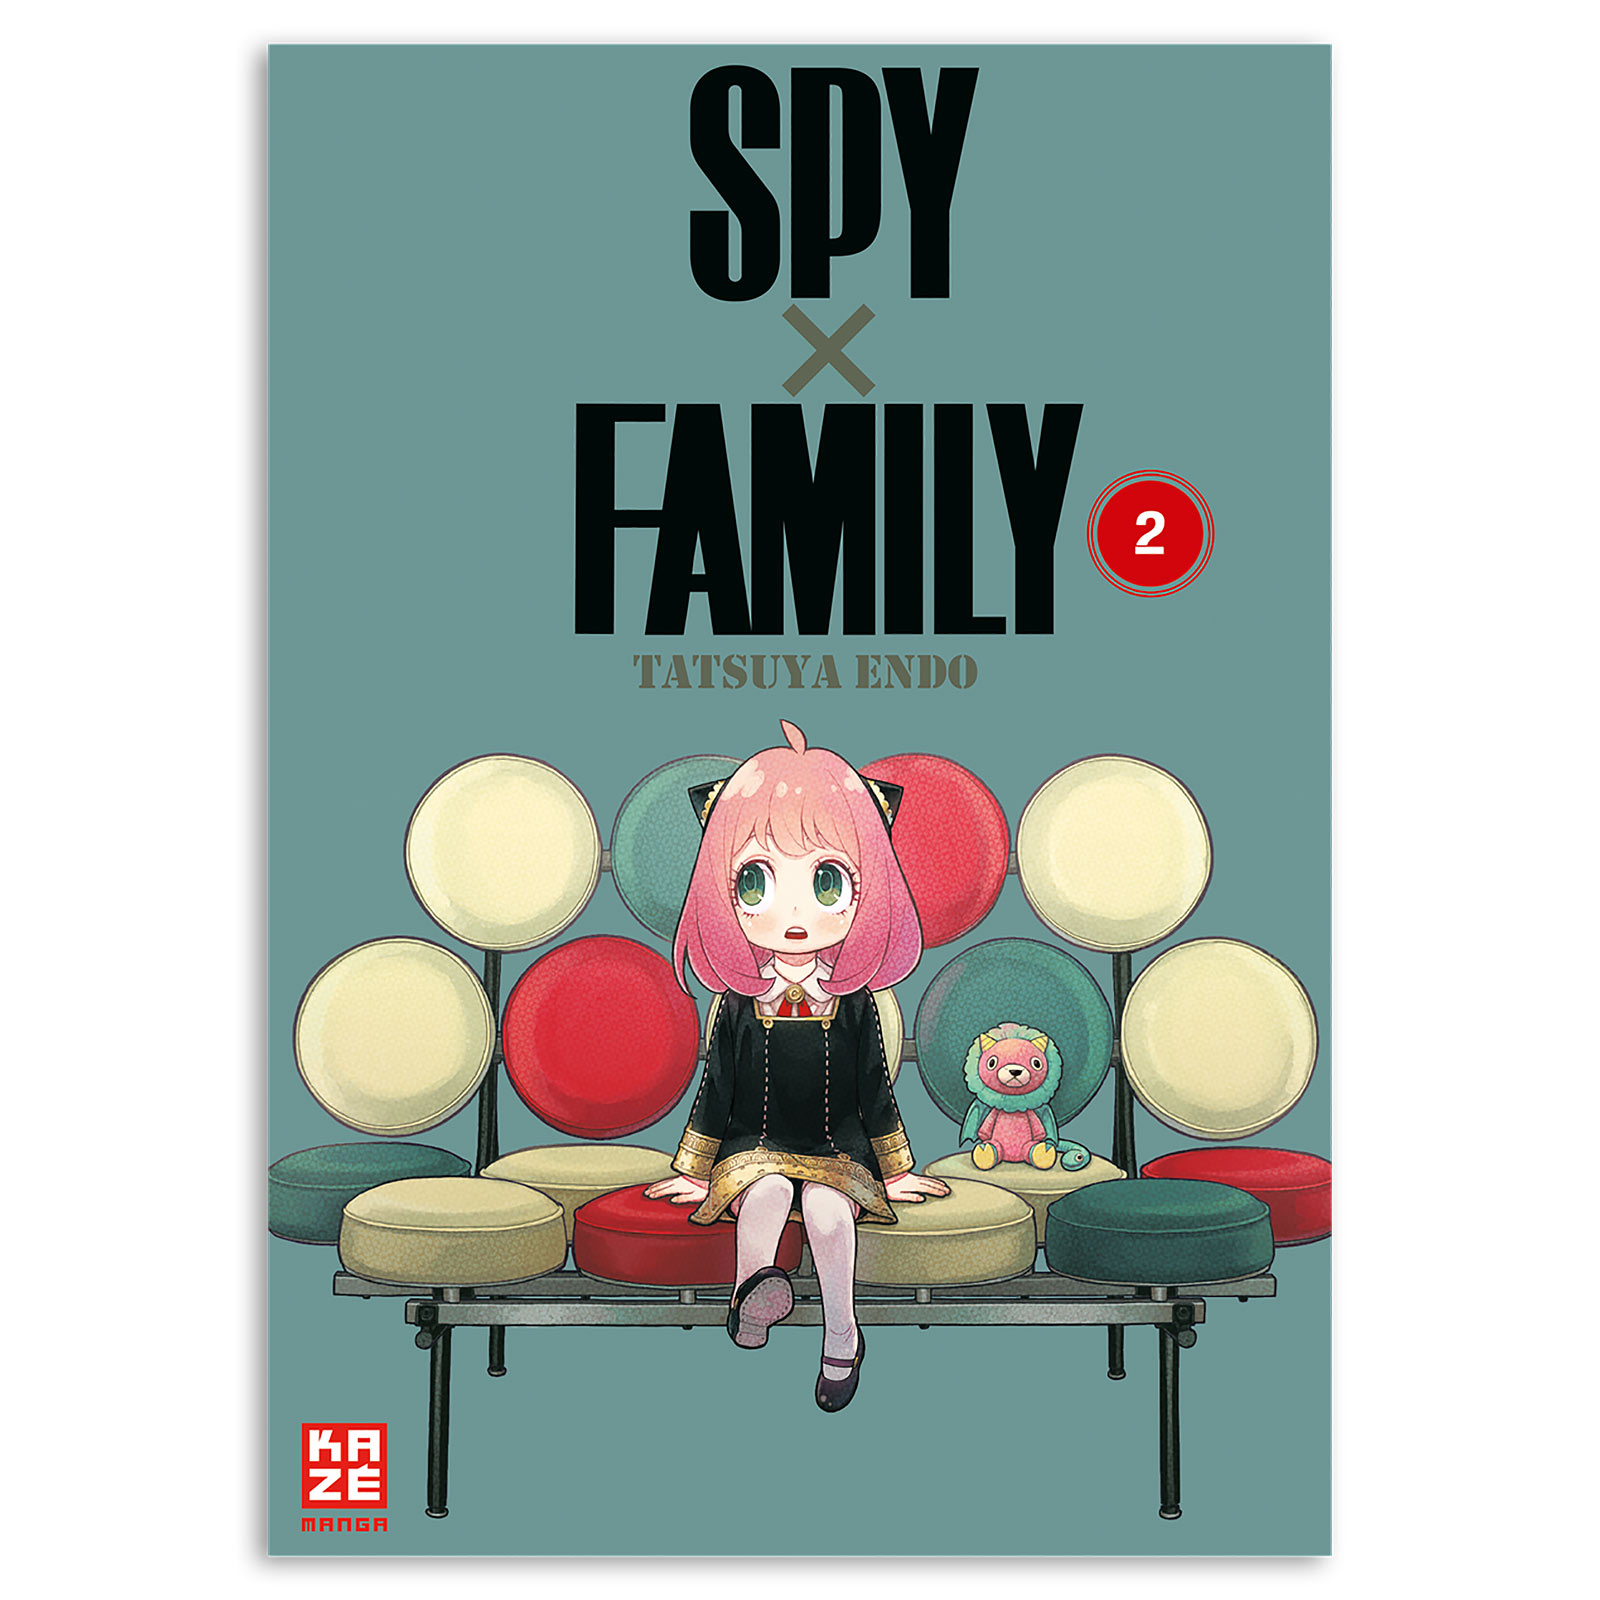 Spy x Family - Band 2 Taschenbuch